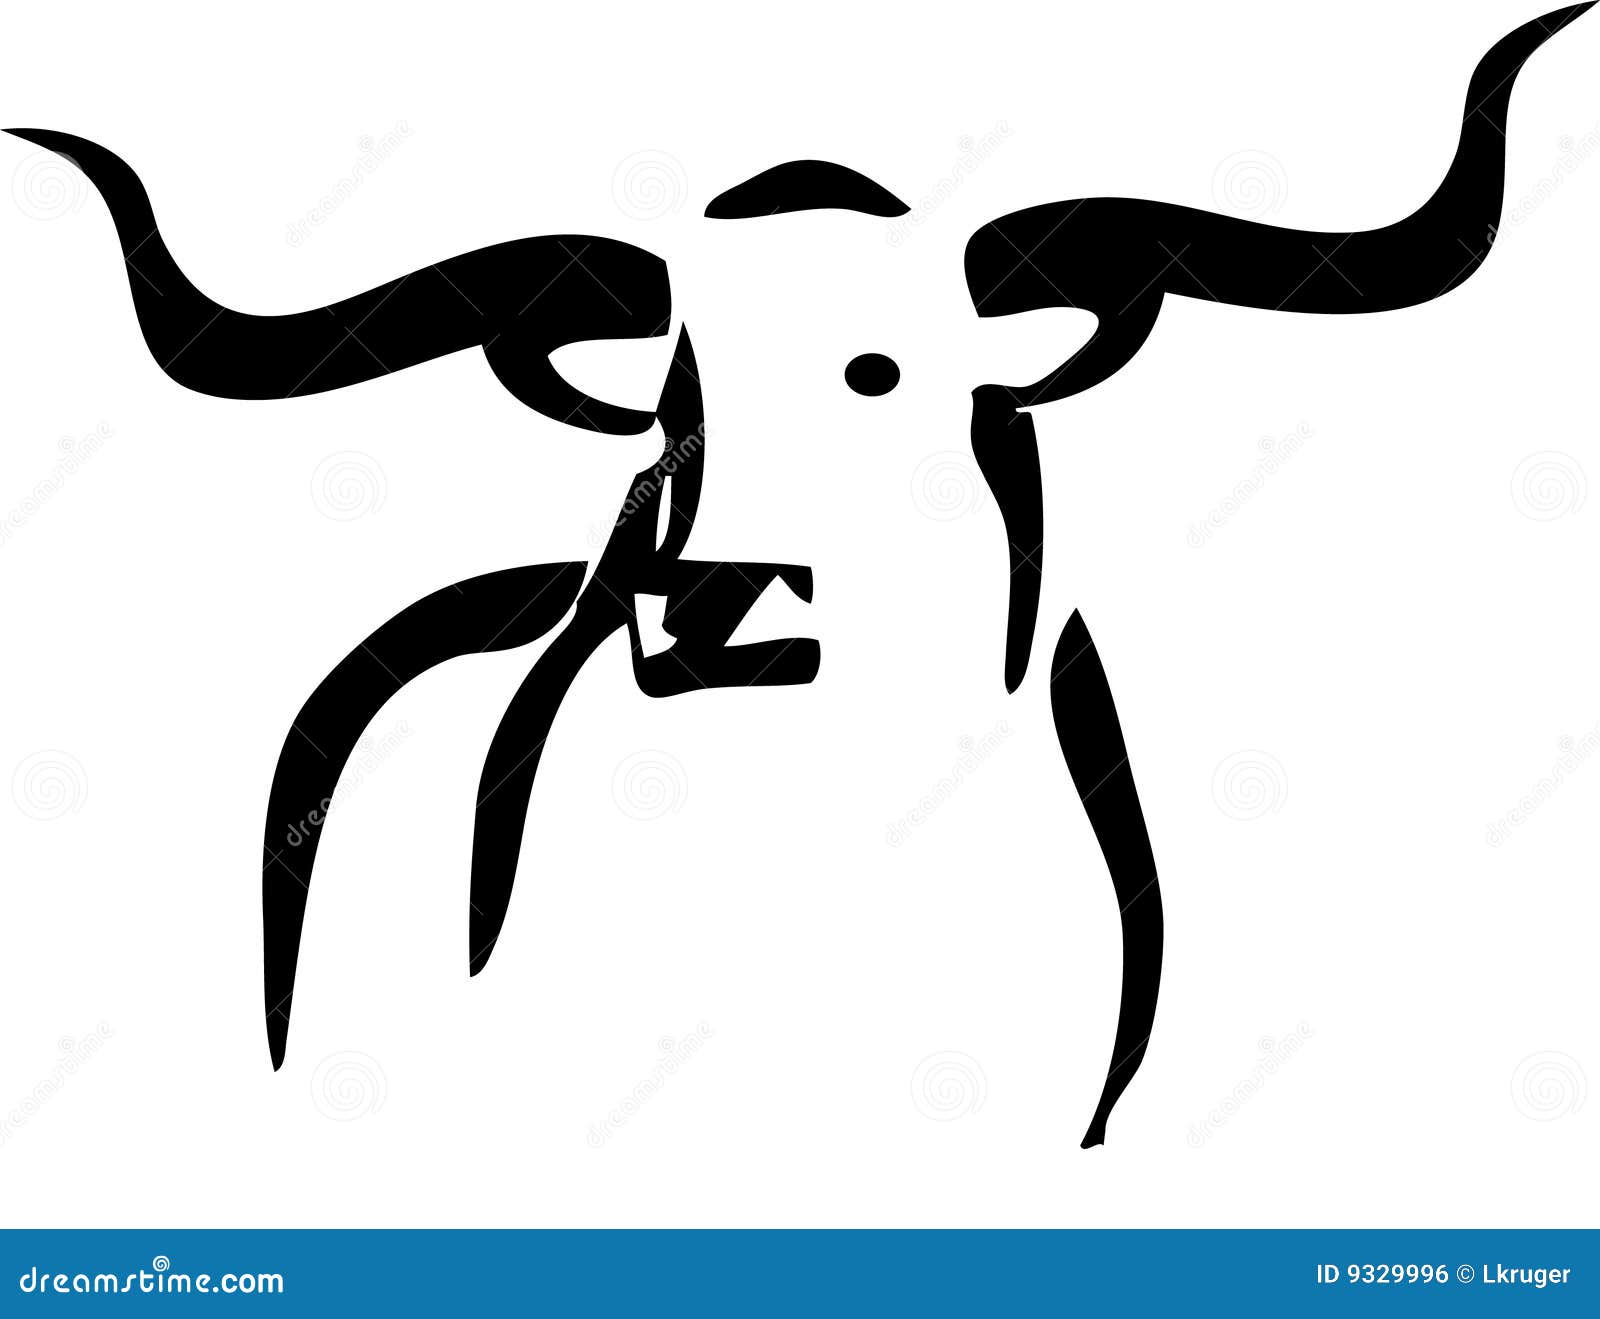 Longhorn standing in grass stock vector. Illustration of horn - 9329996